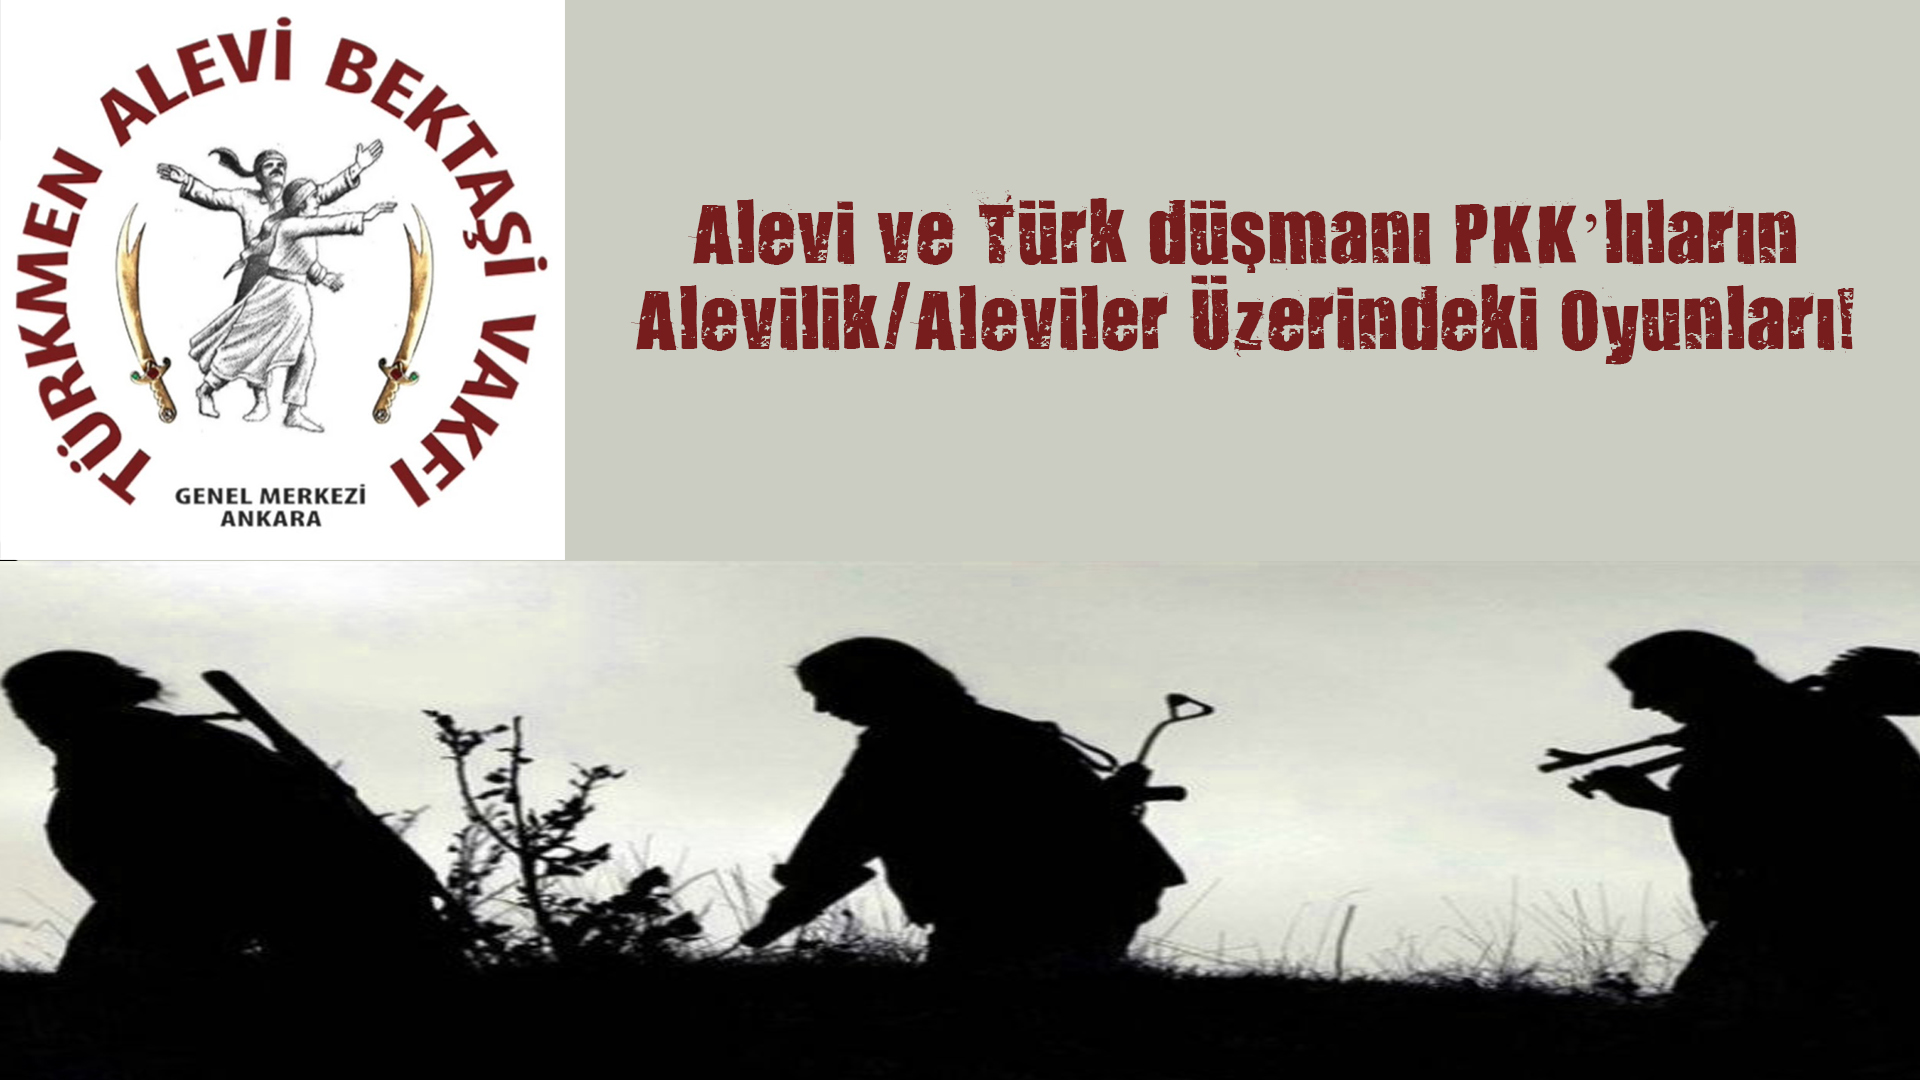 Alevi ve Türk düşmanı PKK’lıların Alevilik/Aleviler Üzerindeki Oyunları!